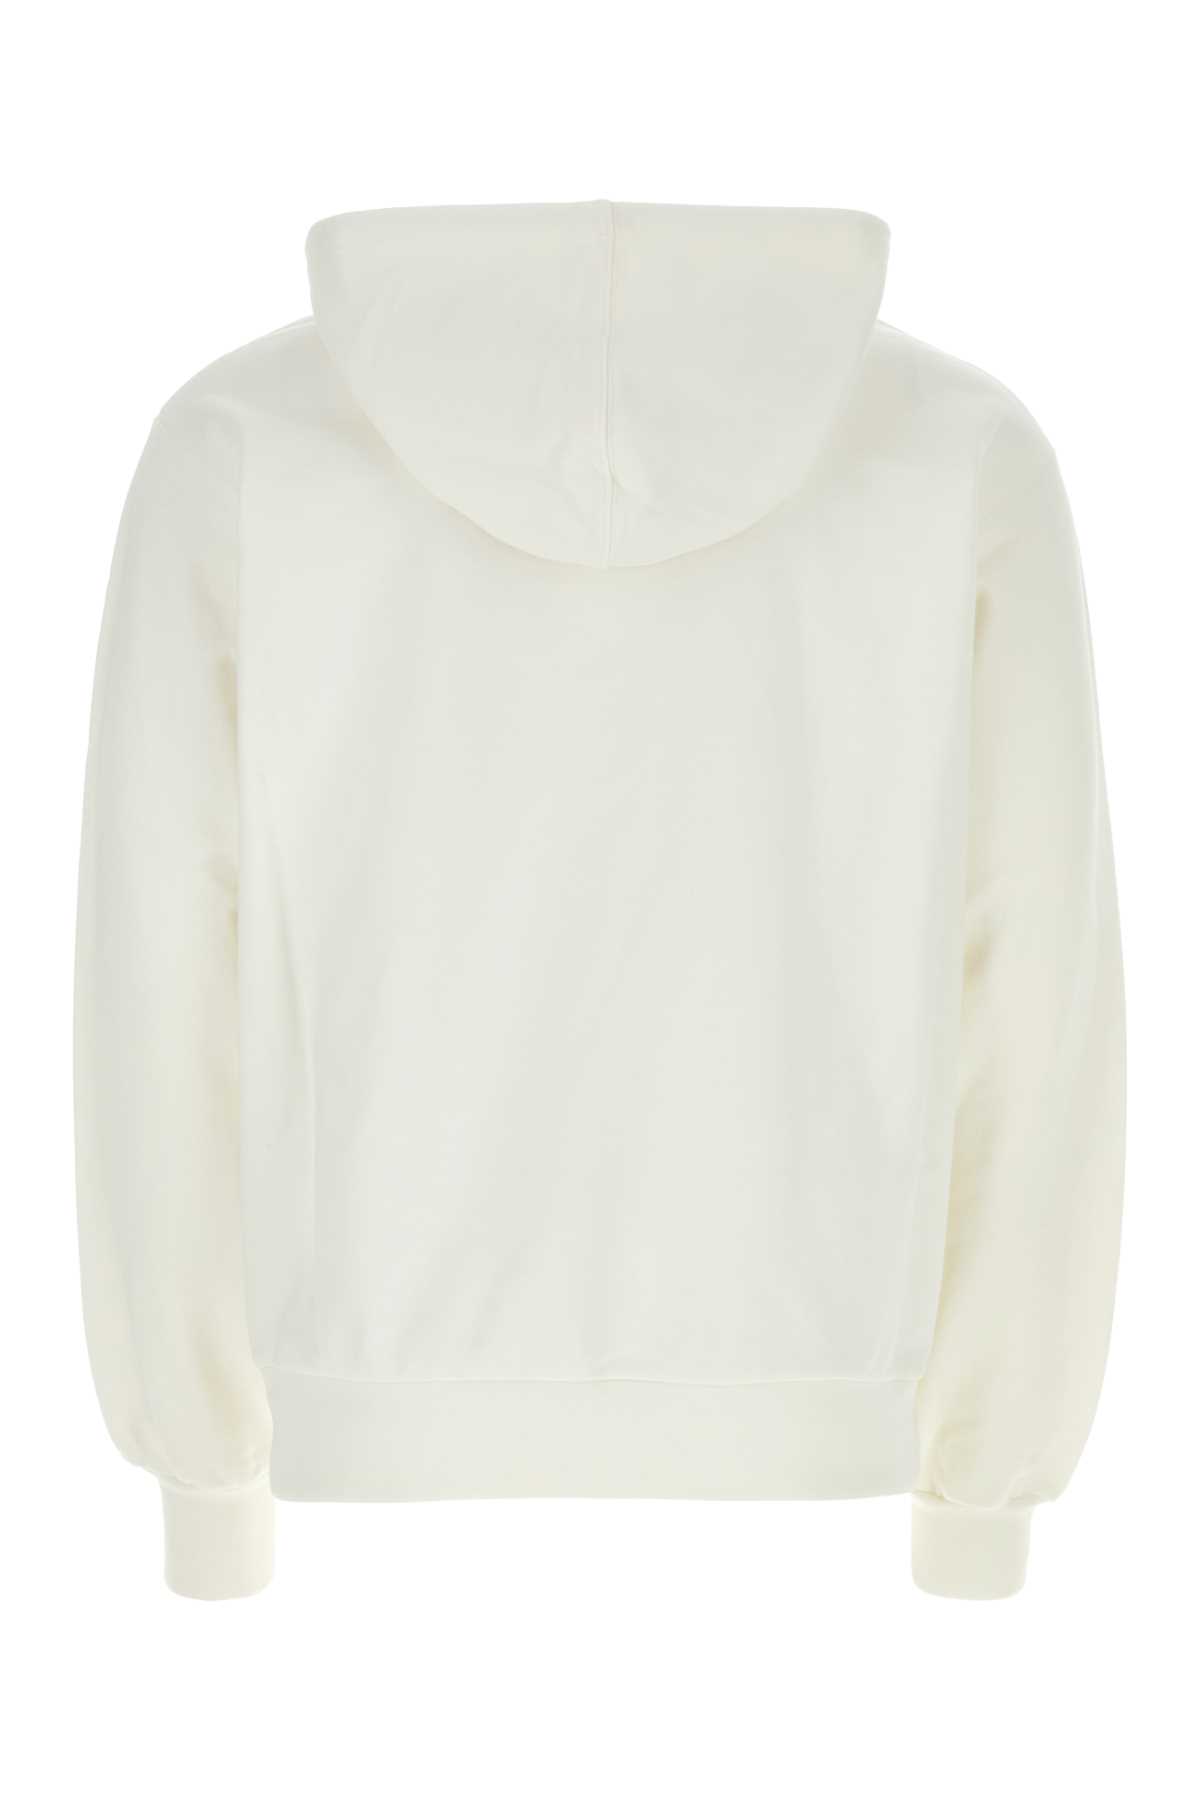 Marni Ivory Cotton Sweatshirt In Naturalwhite